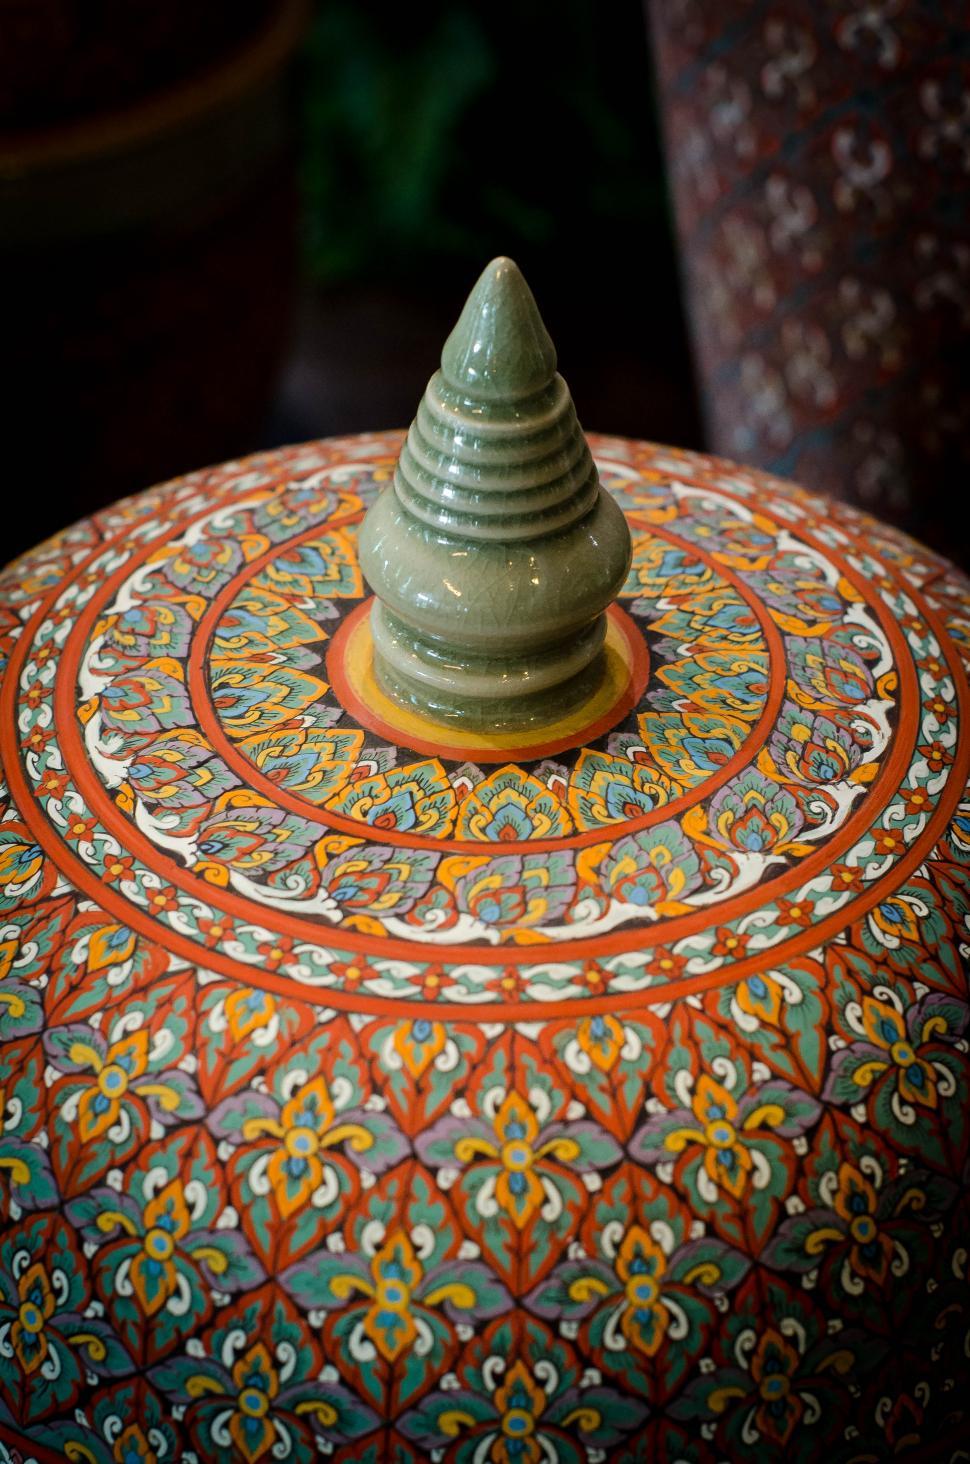 Free Image of Thai pattern style jar 